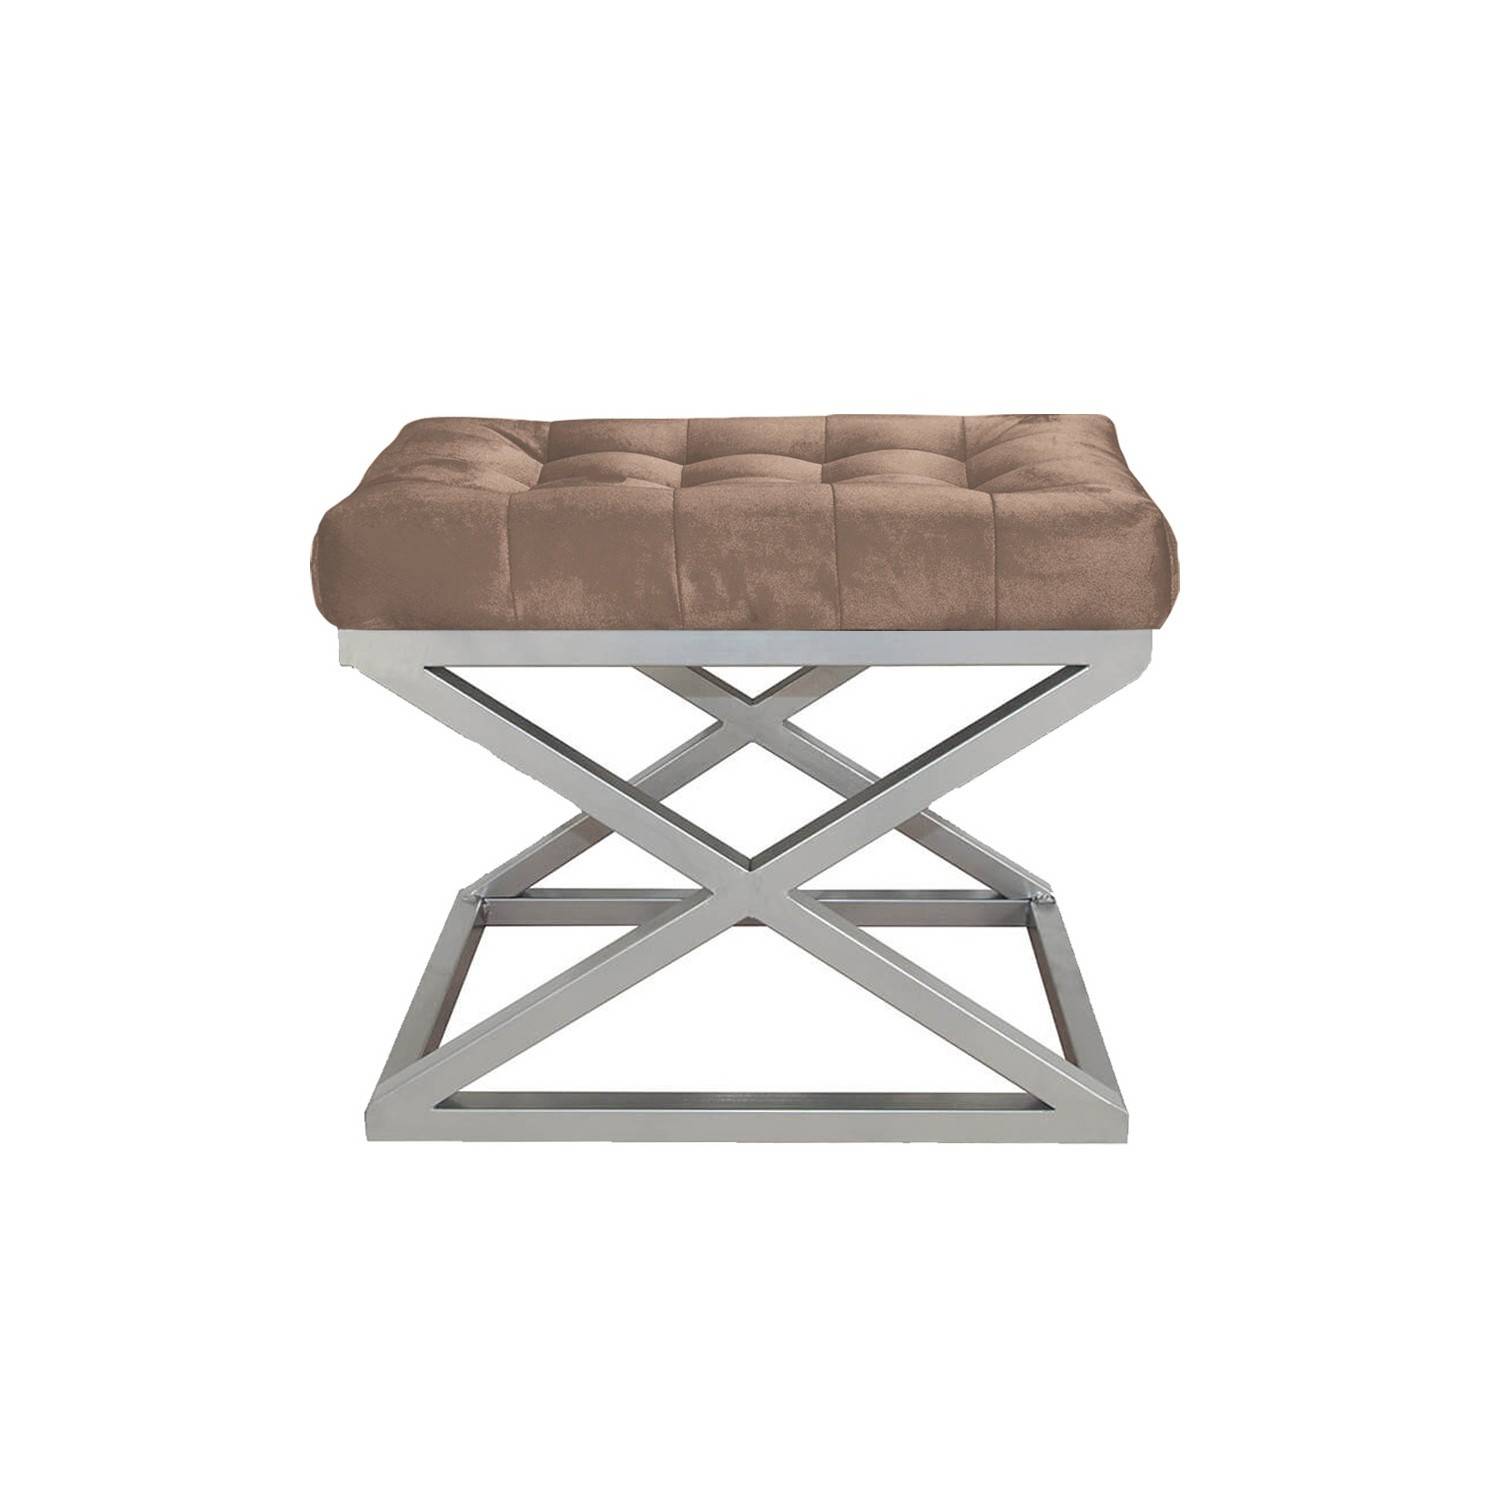 Taburete Ulad de metal plateado y terciopelo marrón con asiento tapizado